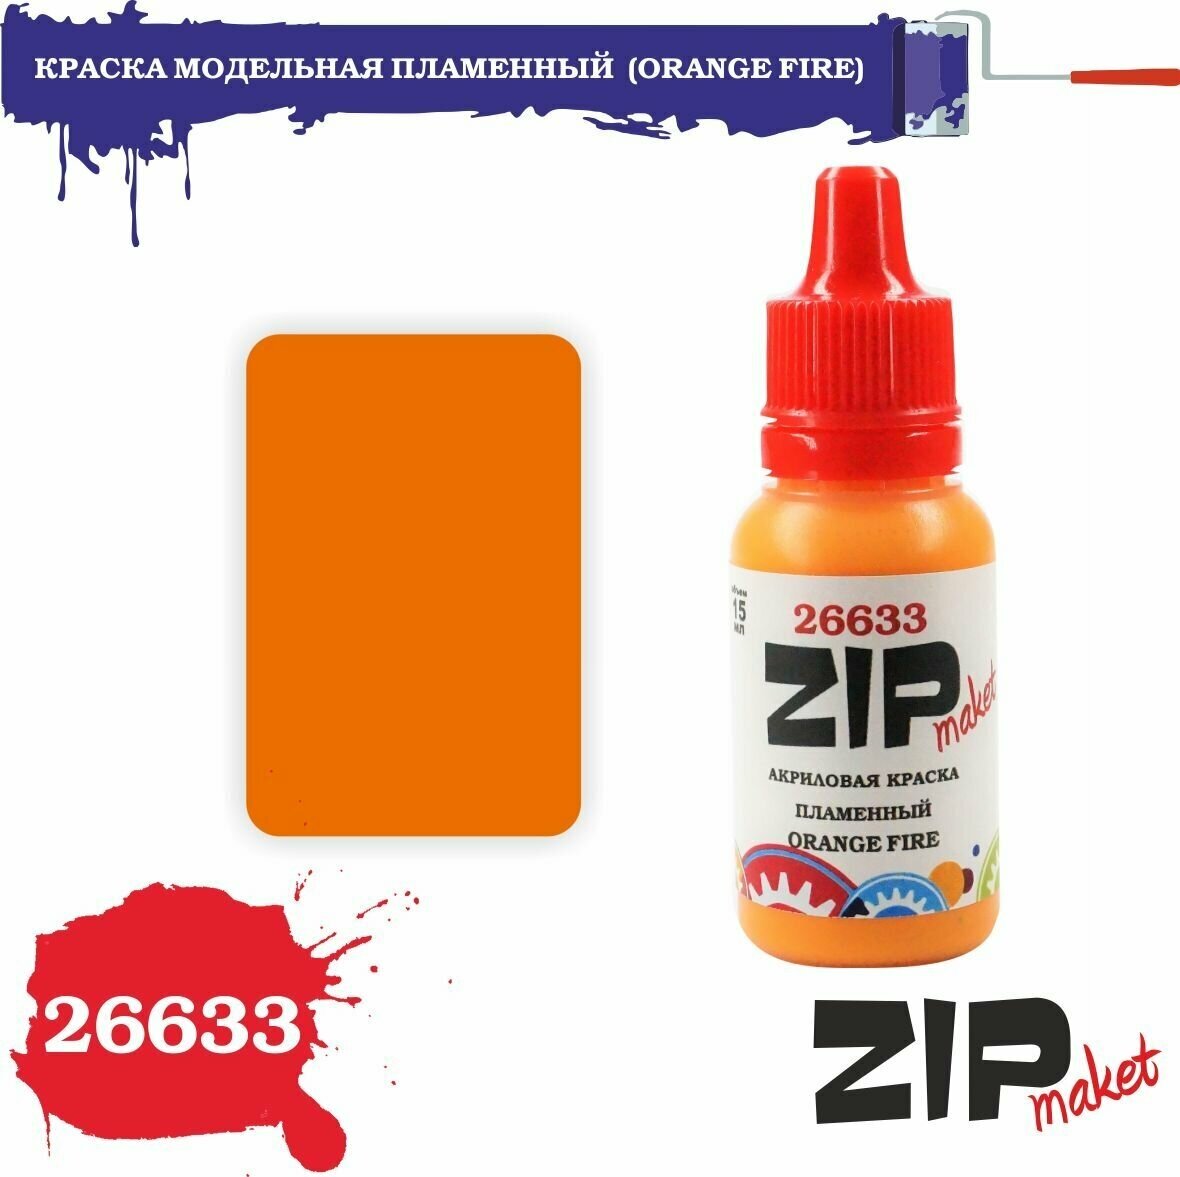 Акриловая краска для сборных моделей 26633 краска модельная пламенный (ORANGE FIRE) ZIPmaket